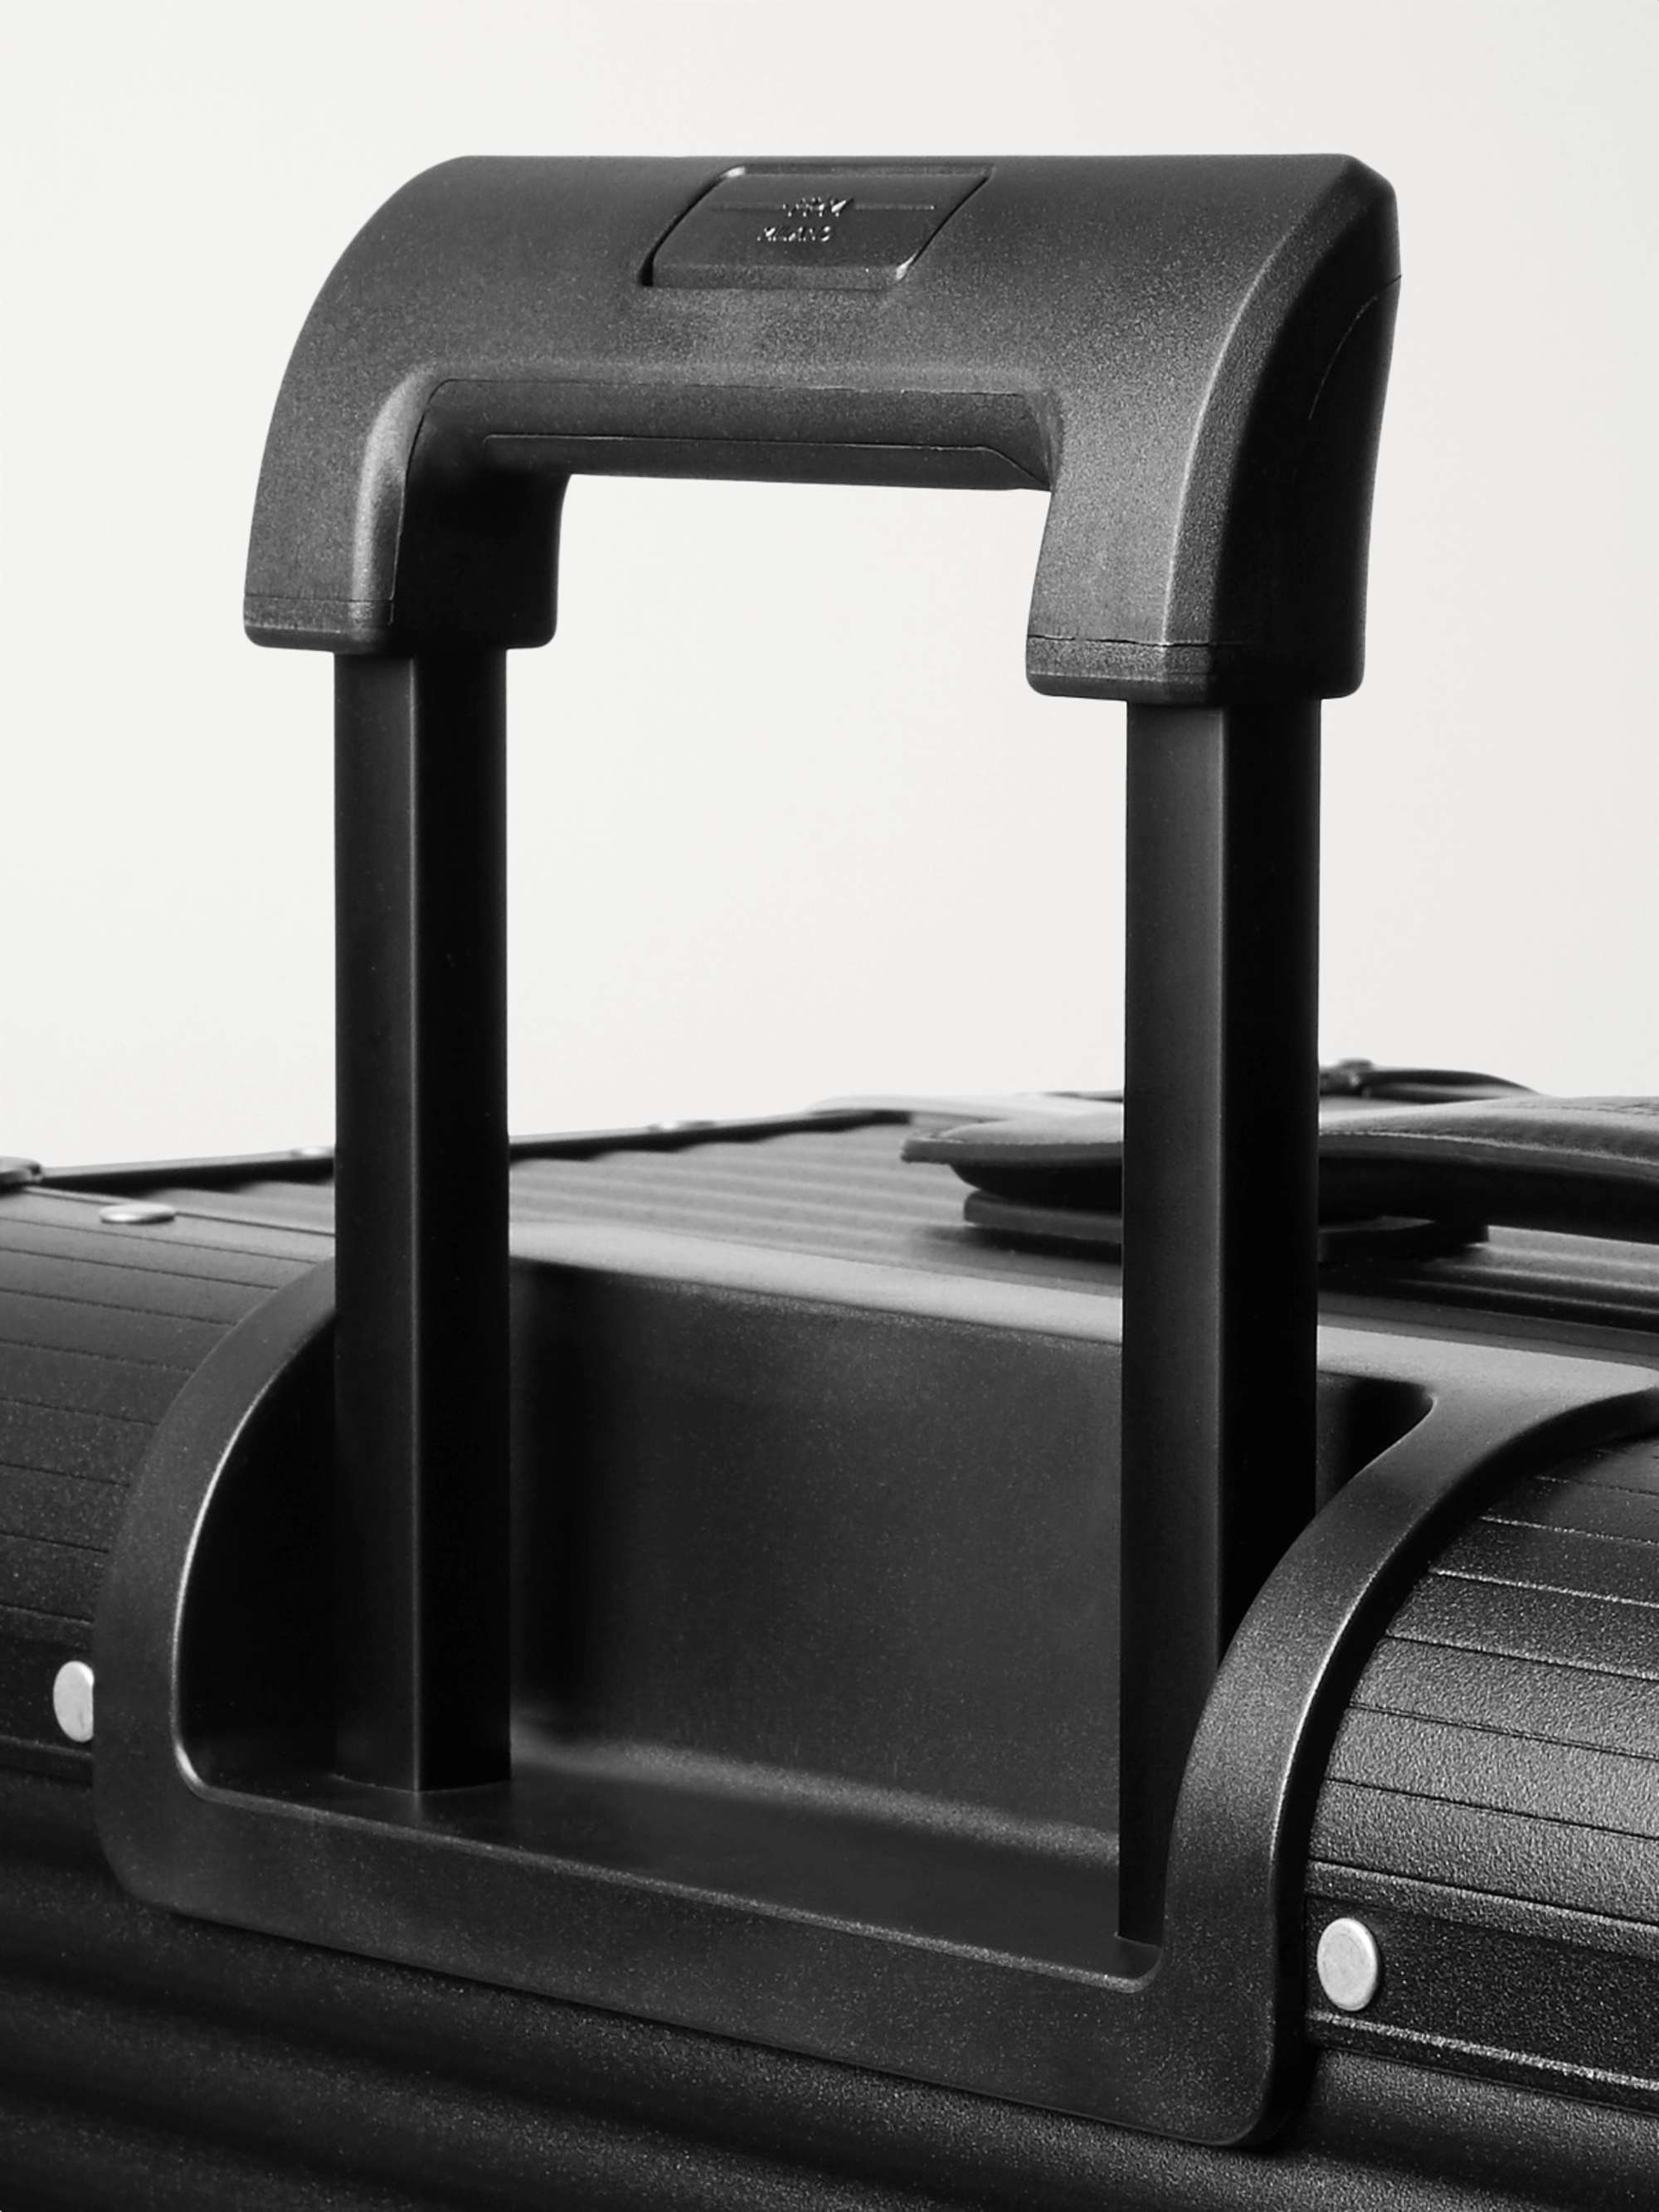 FPM MILANO Spinner 76cm Aluminium Suitcase